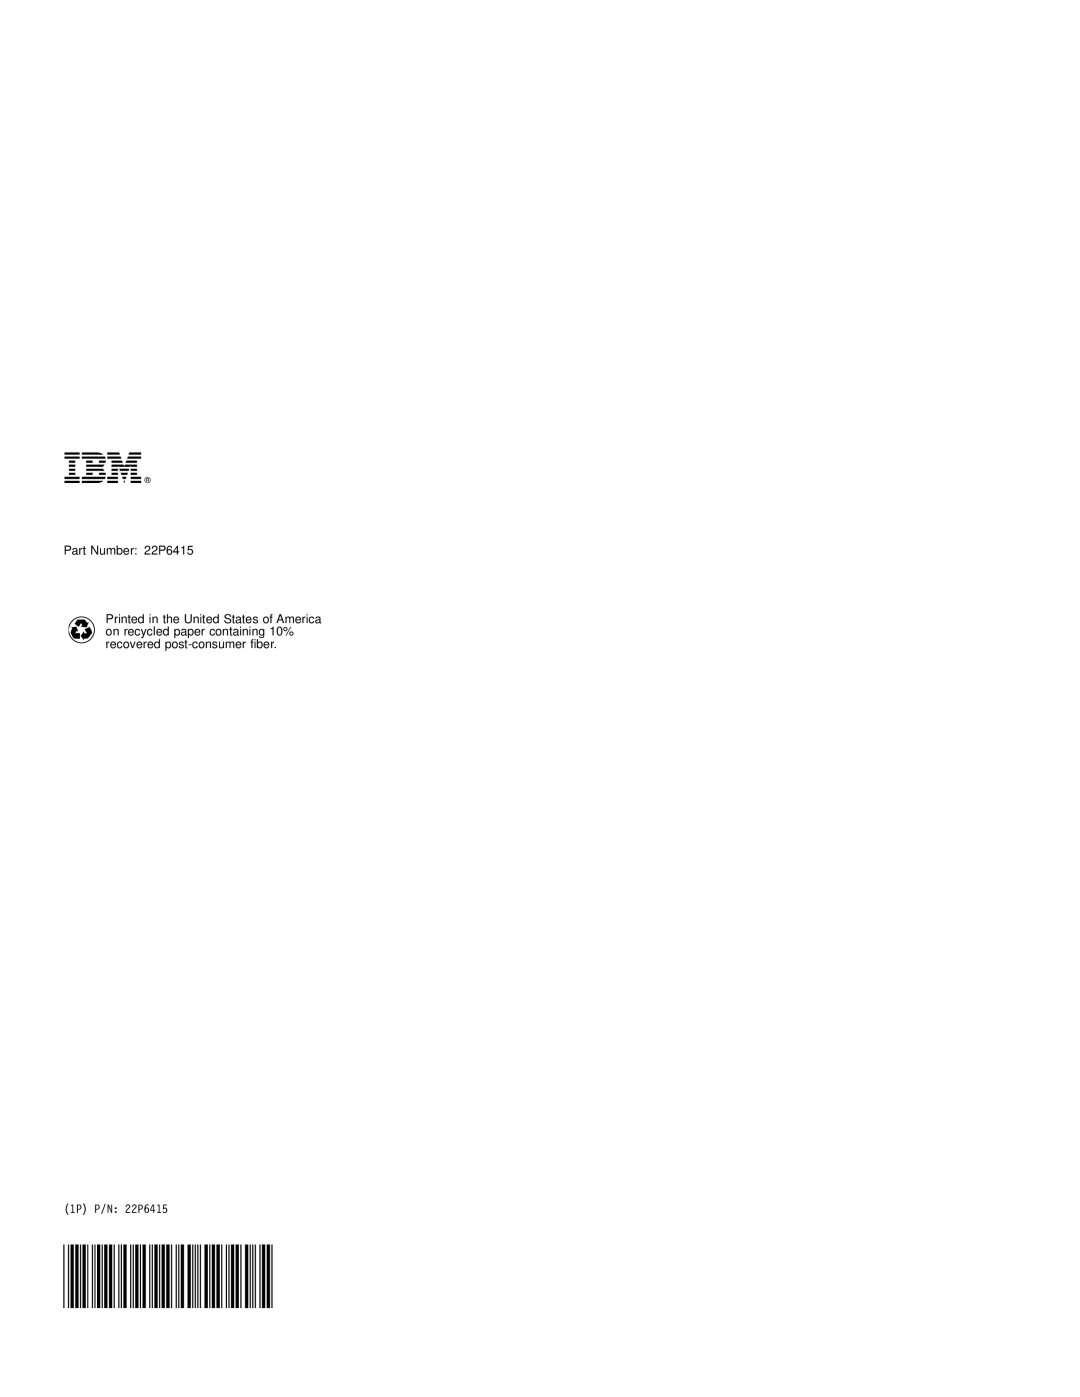 IBM manual Part Number 22P6415, 1P P/N 22P6415 